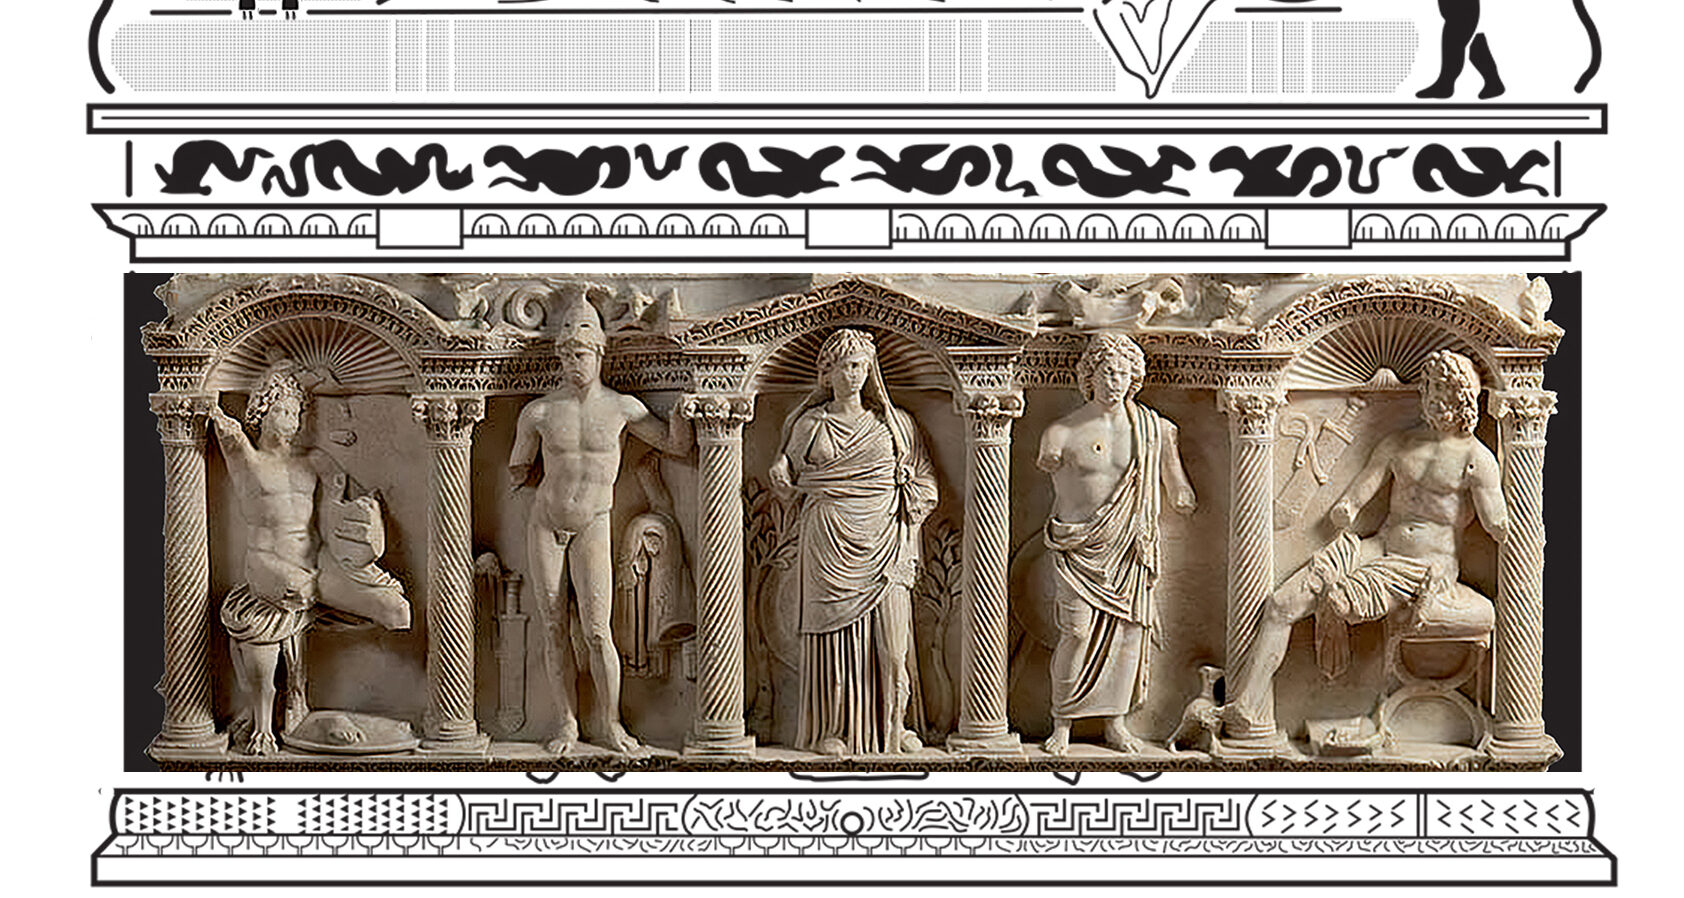 “Un capolavoro per tutti”: il 24 a Melfi nel Museo Archeologico Nazionale “Massimo Pallottino” presentazione del pannello multisensoriale del Sarcofago di Rapolla